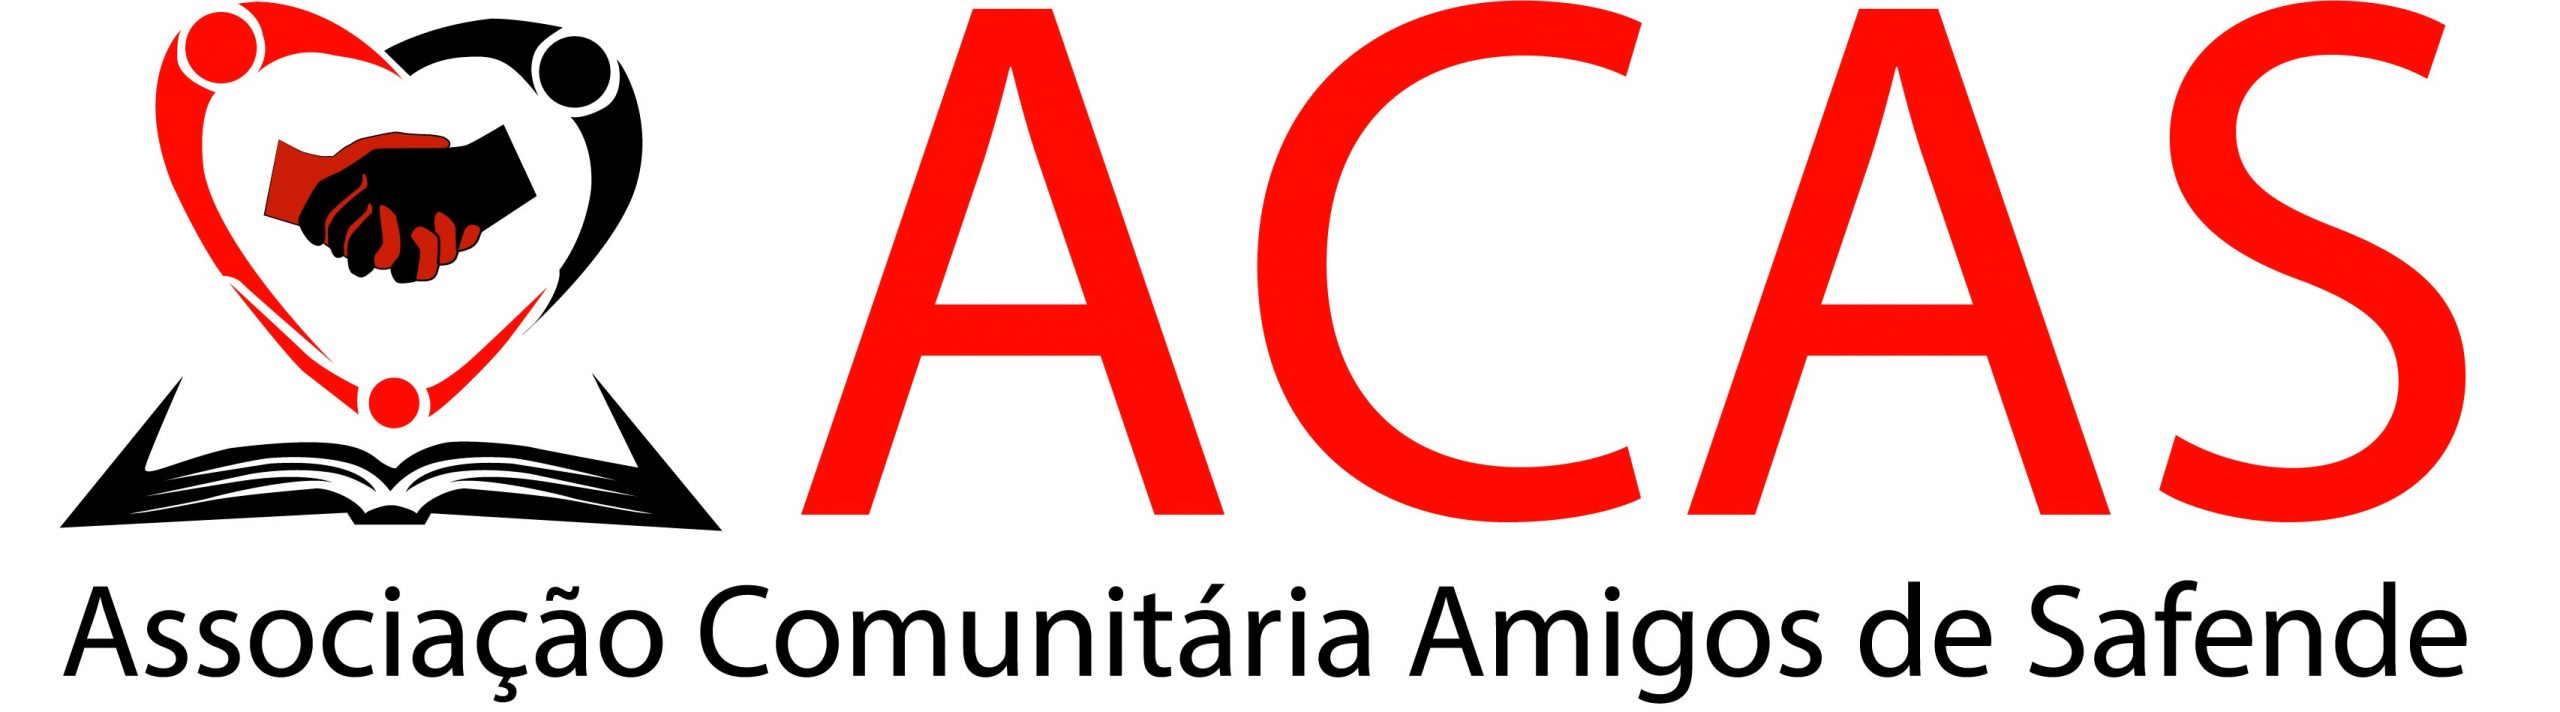 ACAS logo